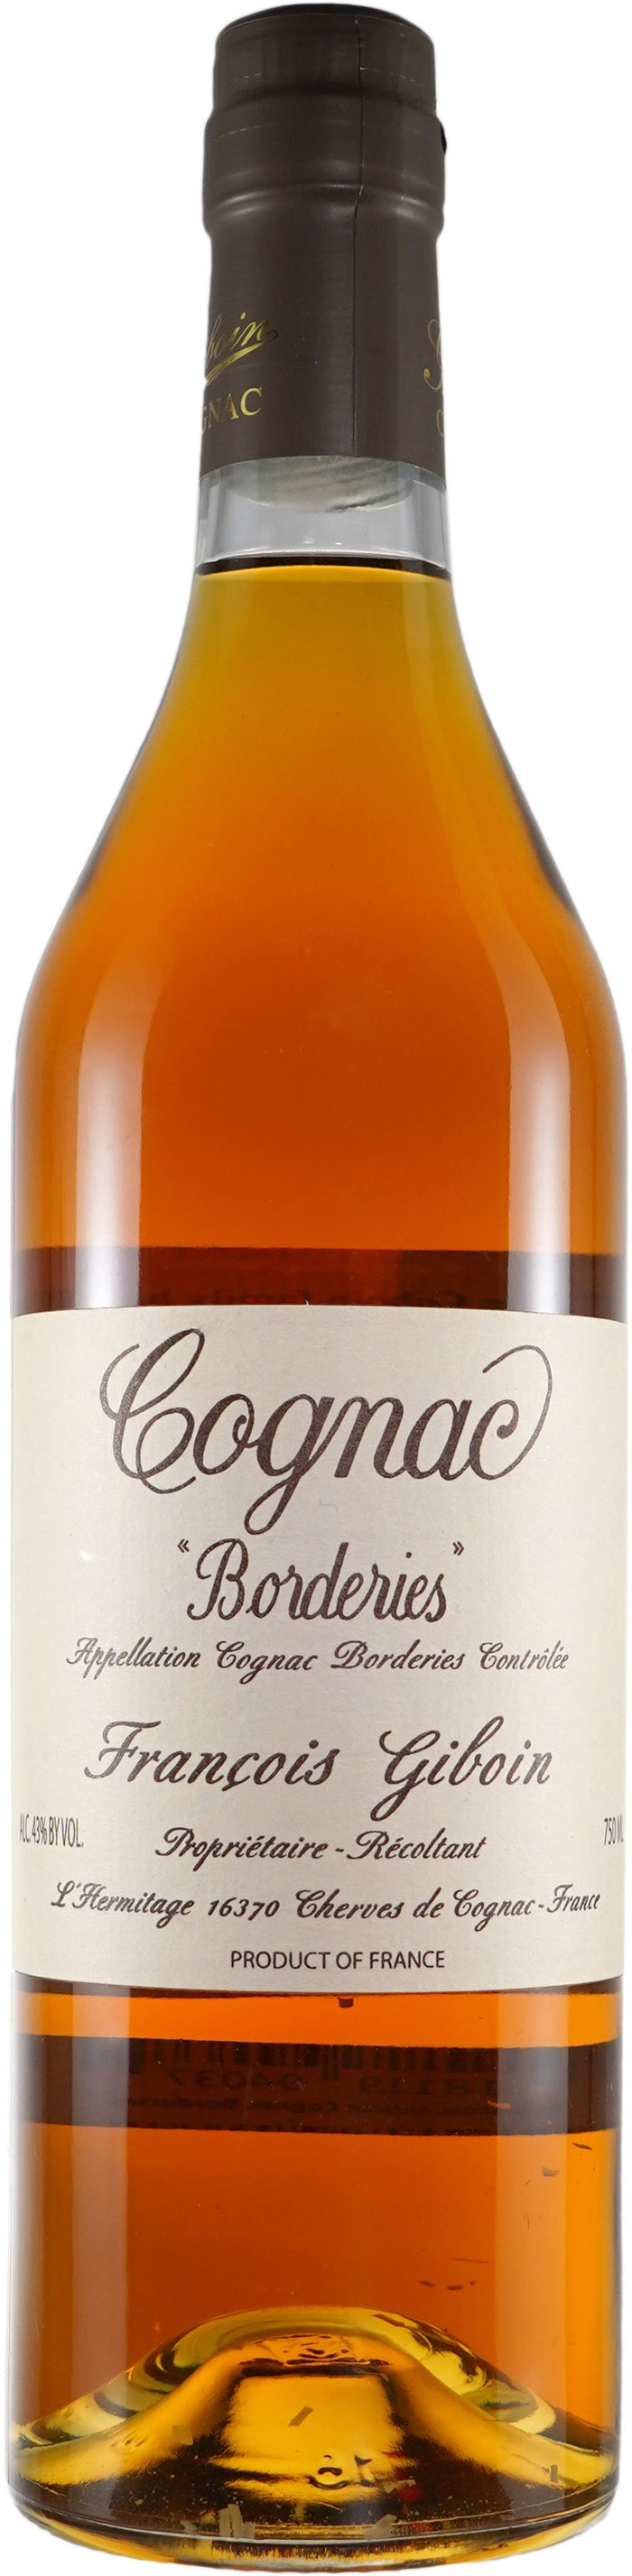 Francois Giboin Borderies Cognac